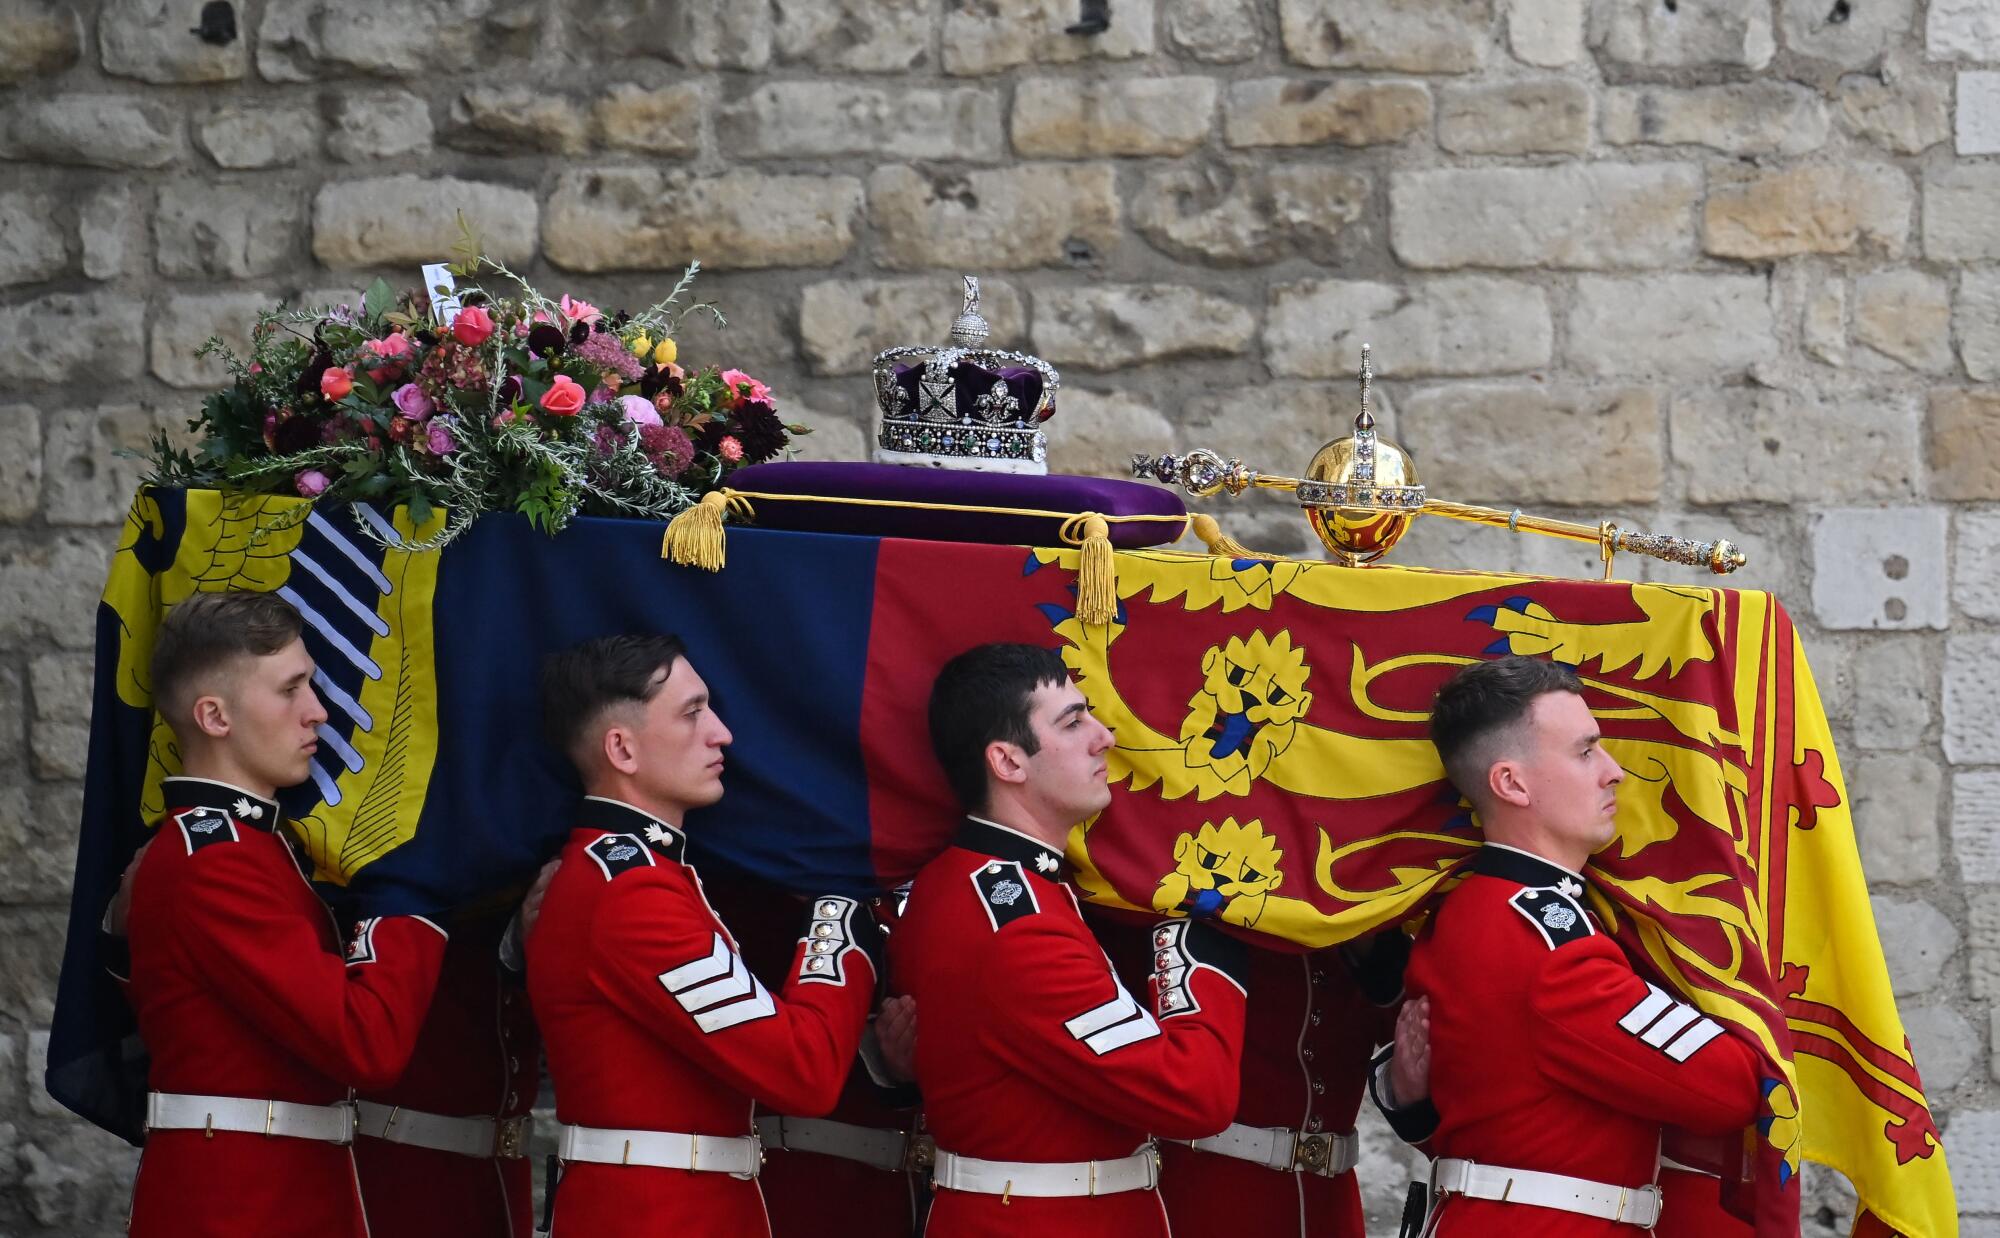 Guards carry Queen Elizabeth II's coffin.